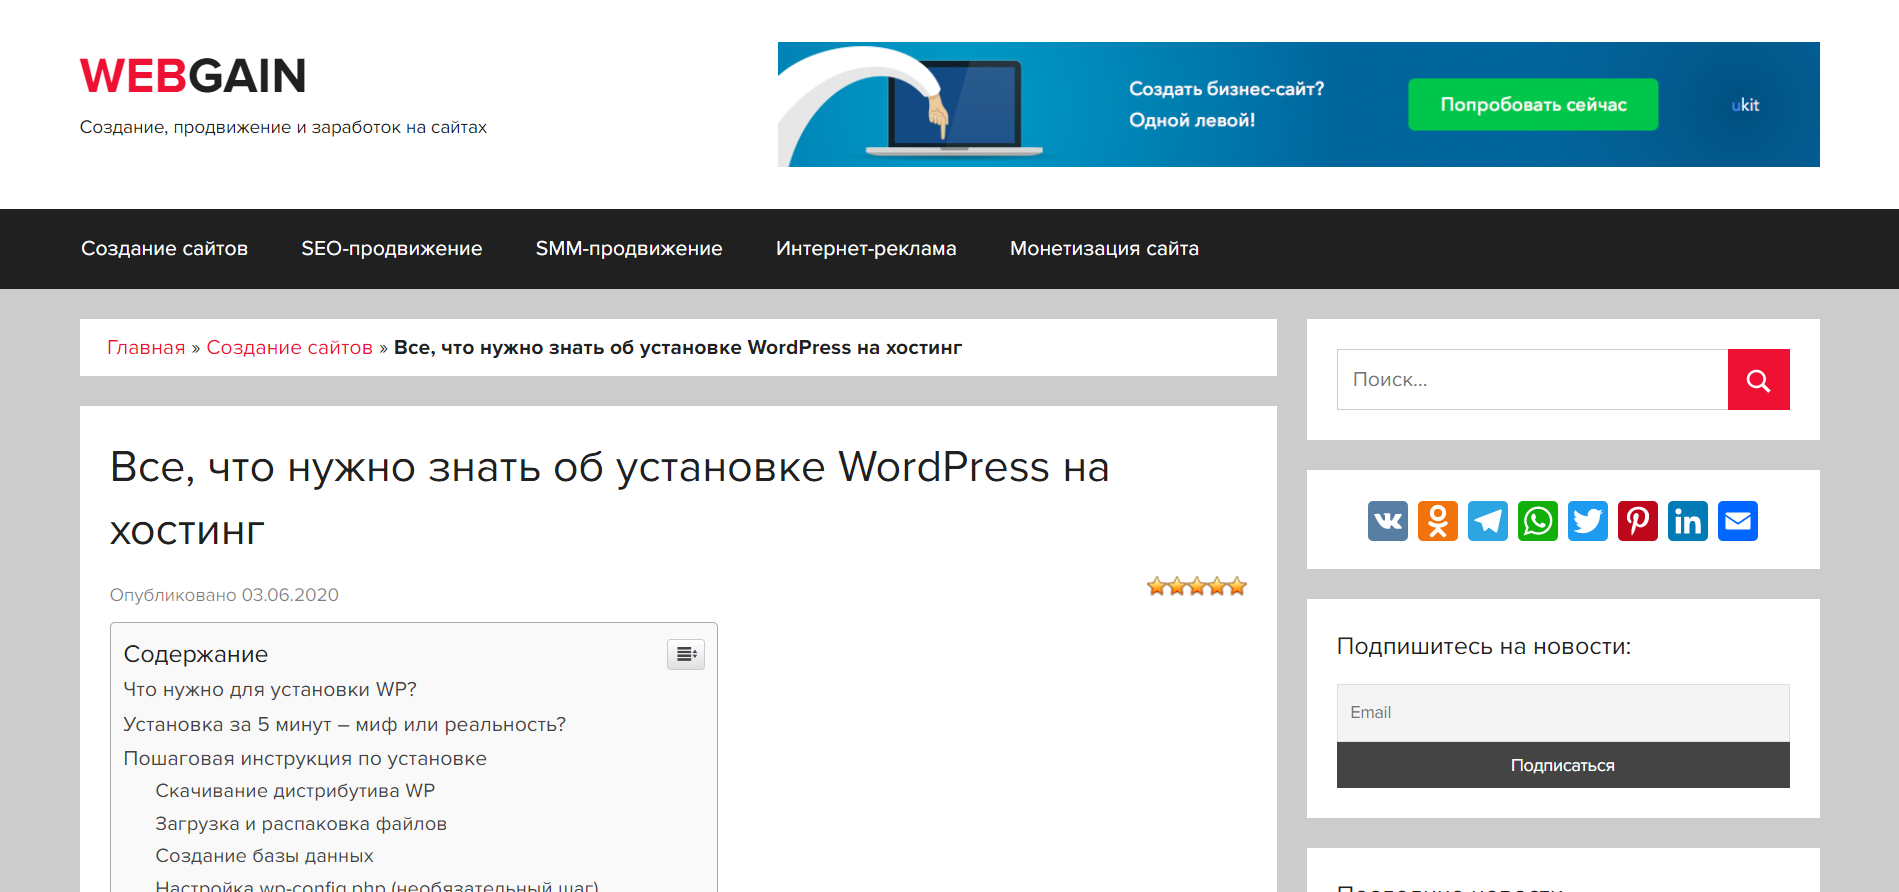 Все, что нужно знать об установке WordPress на хостинг